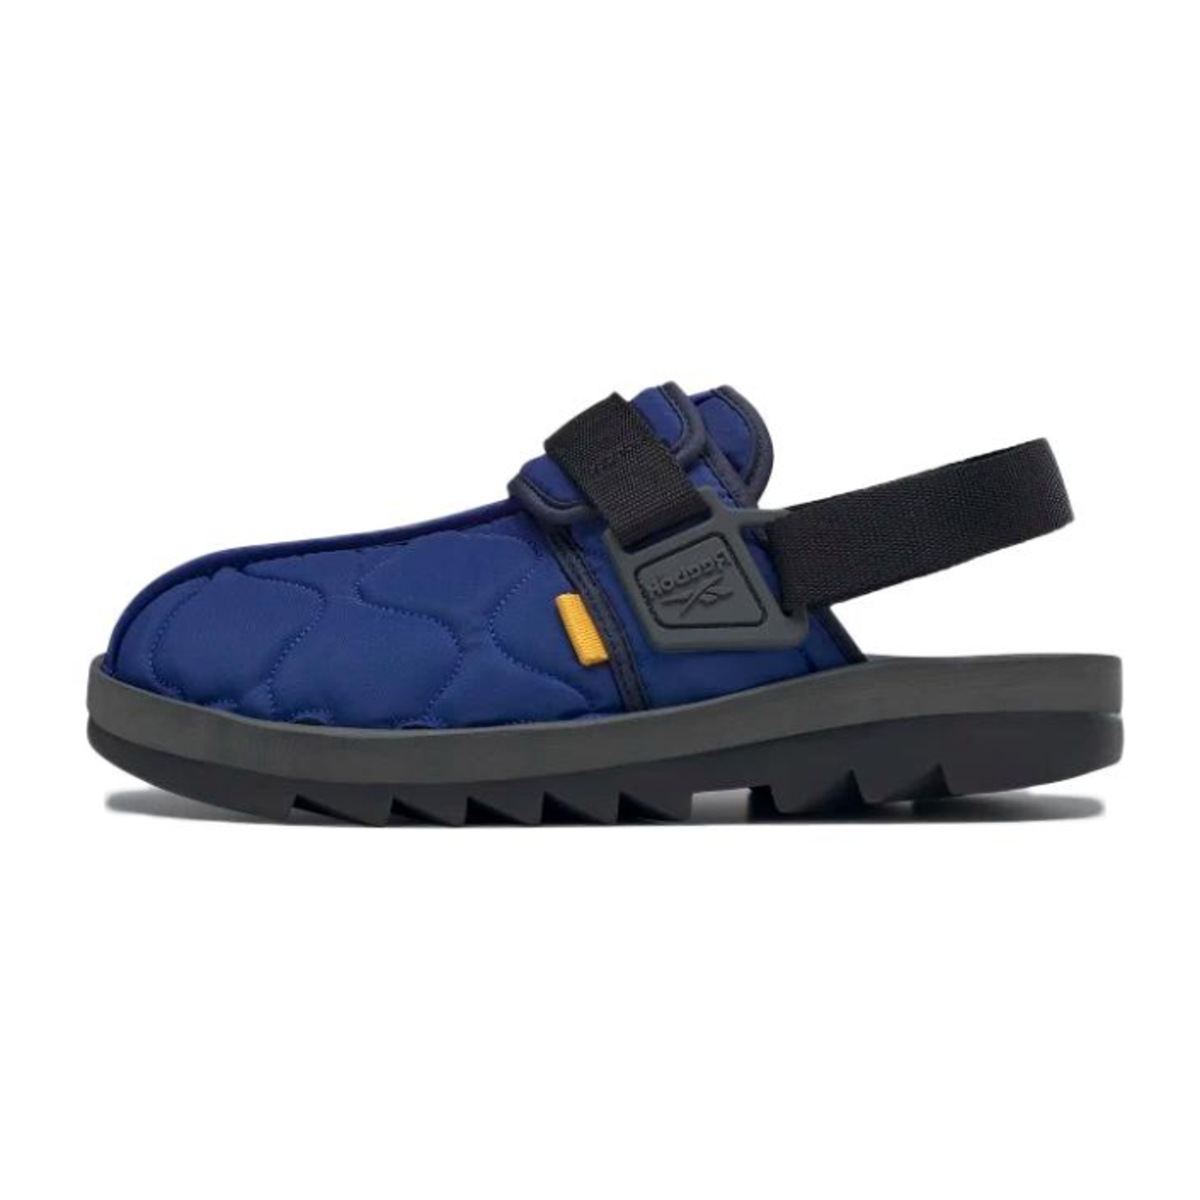 Reebok Unisex Beatnik Slingback Sandal Navy Blue and Cobalt Size 11 GW8325 NIB